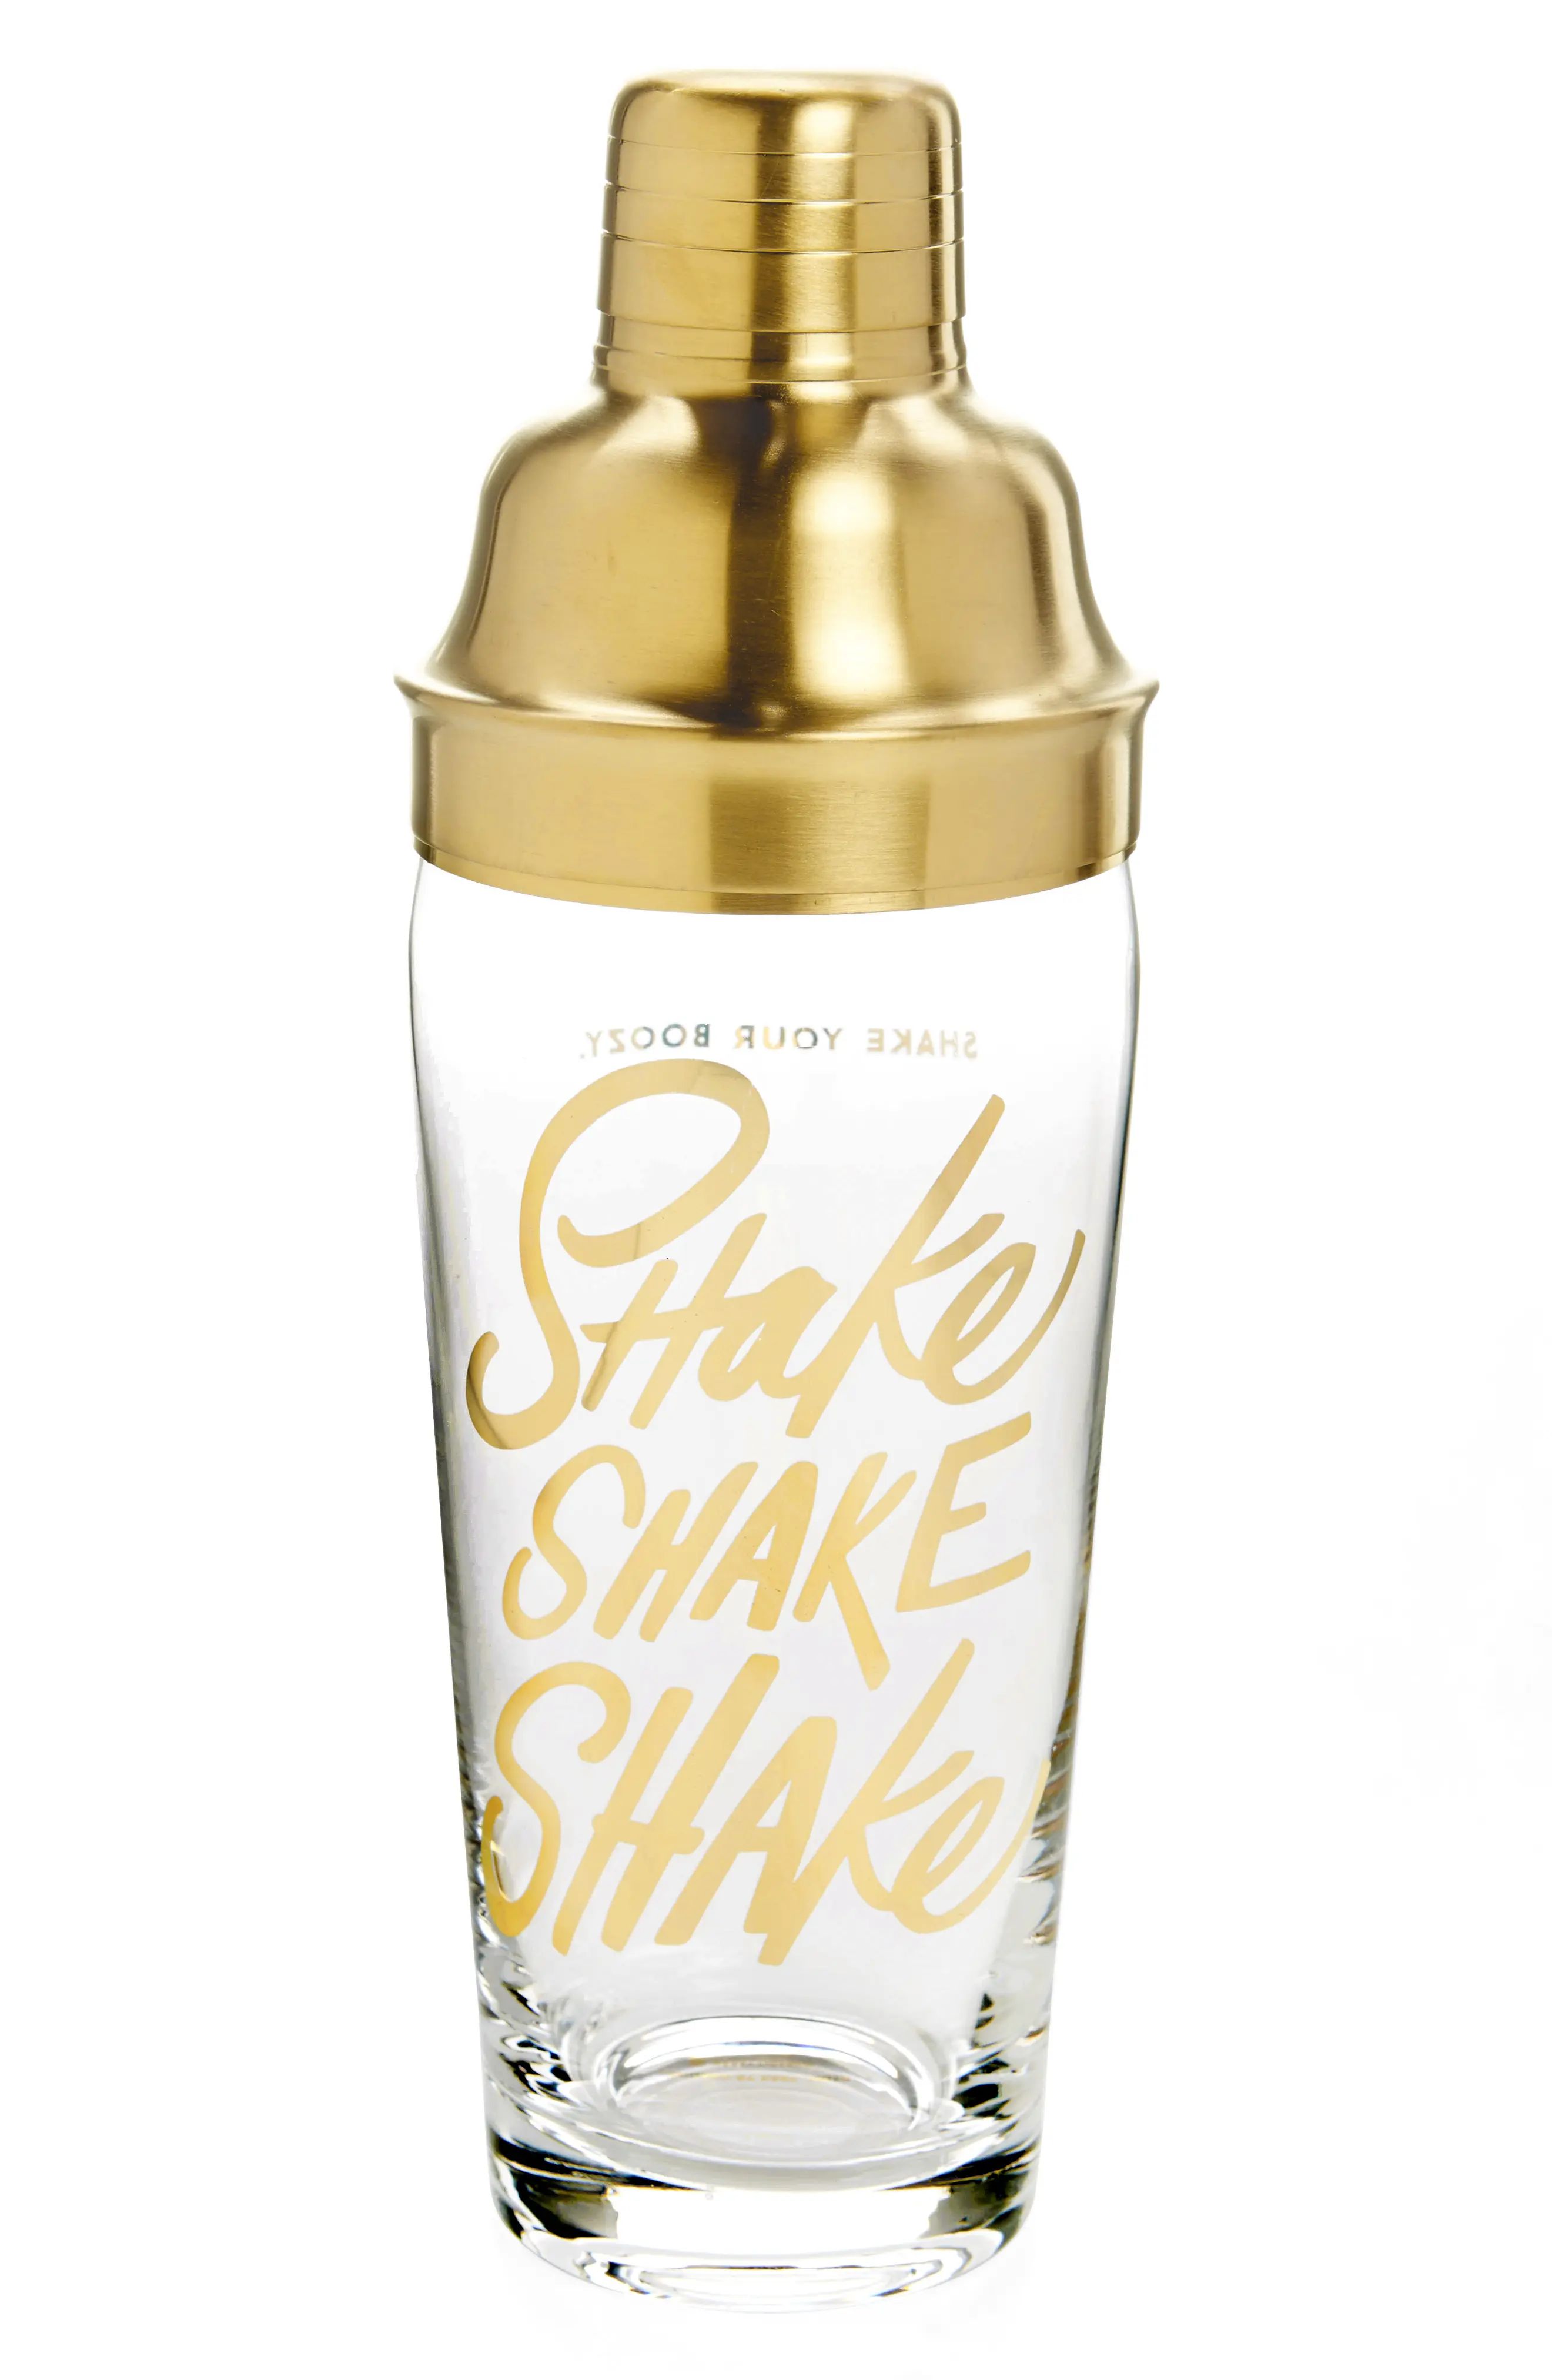 Easy, Tiger Shake Shake Shaker | Nordstrom